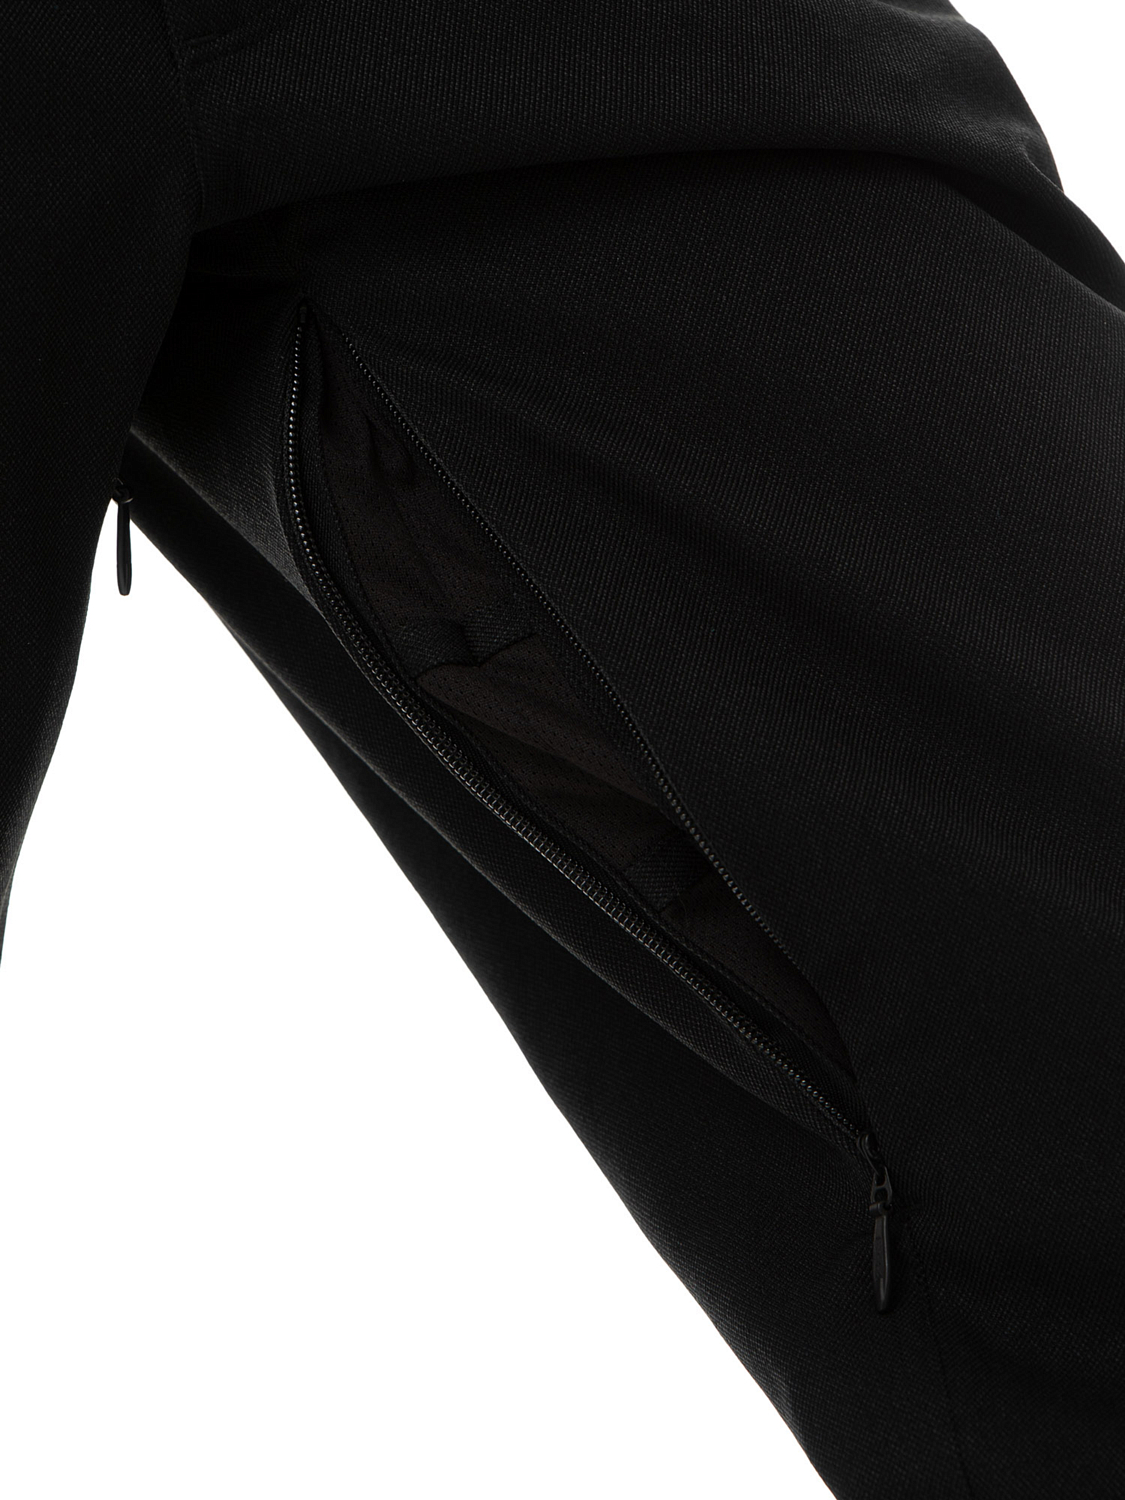 Брюки сноубордические AIRBLASTER High Waisted Trouser Insulated Black